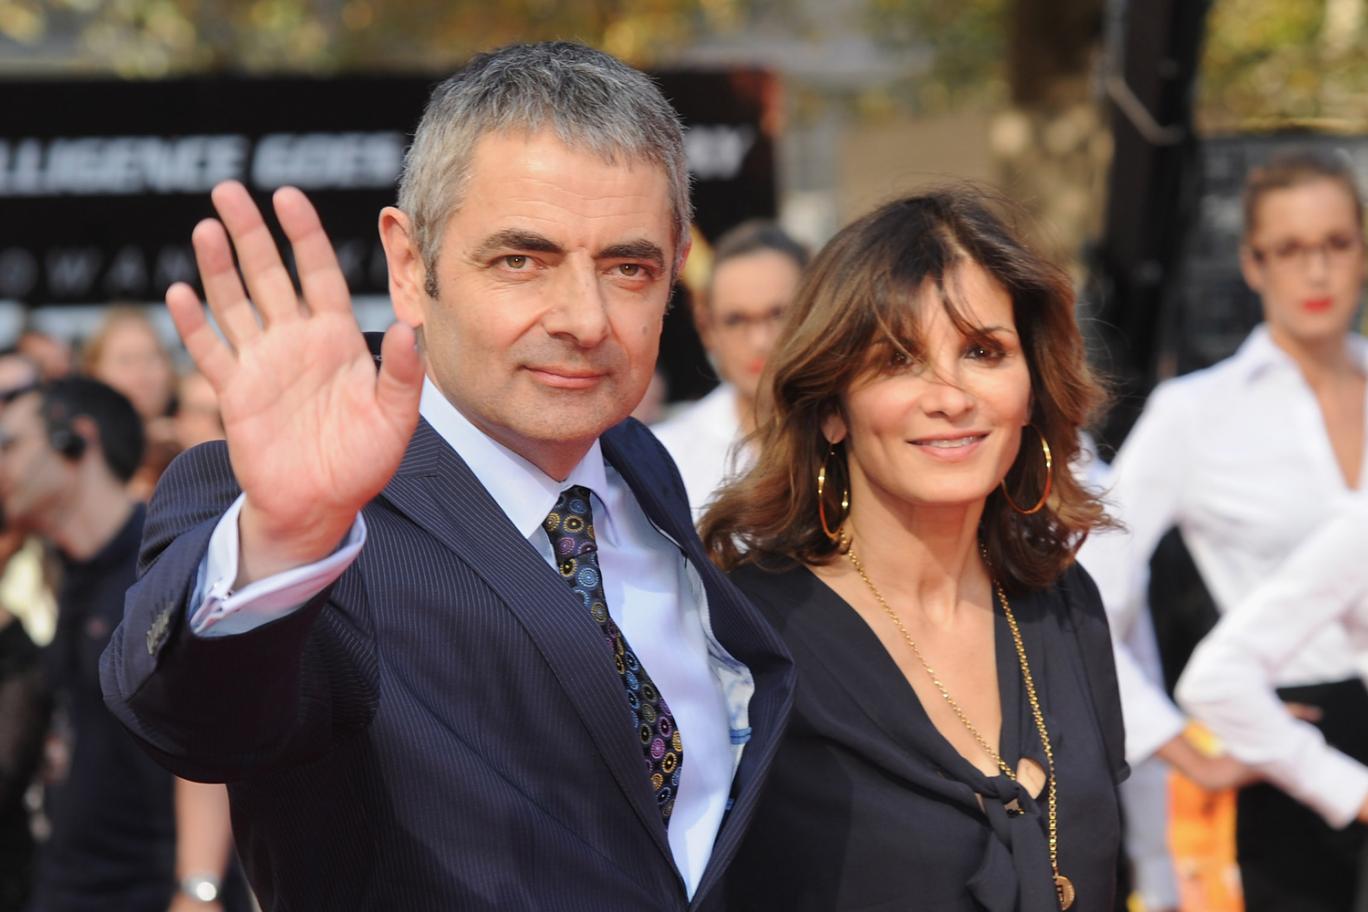 Sao "Mr. Bean" sống chung với tình nhân trẻ ít tuần sau ly hôn vợ